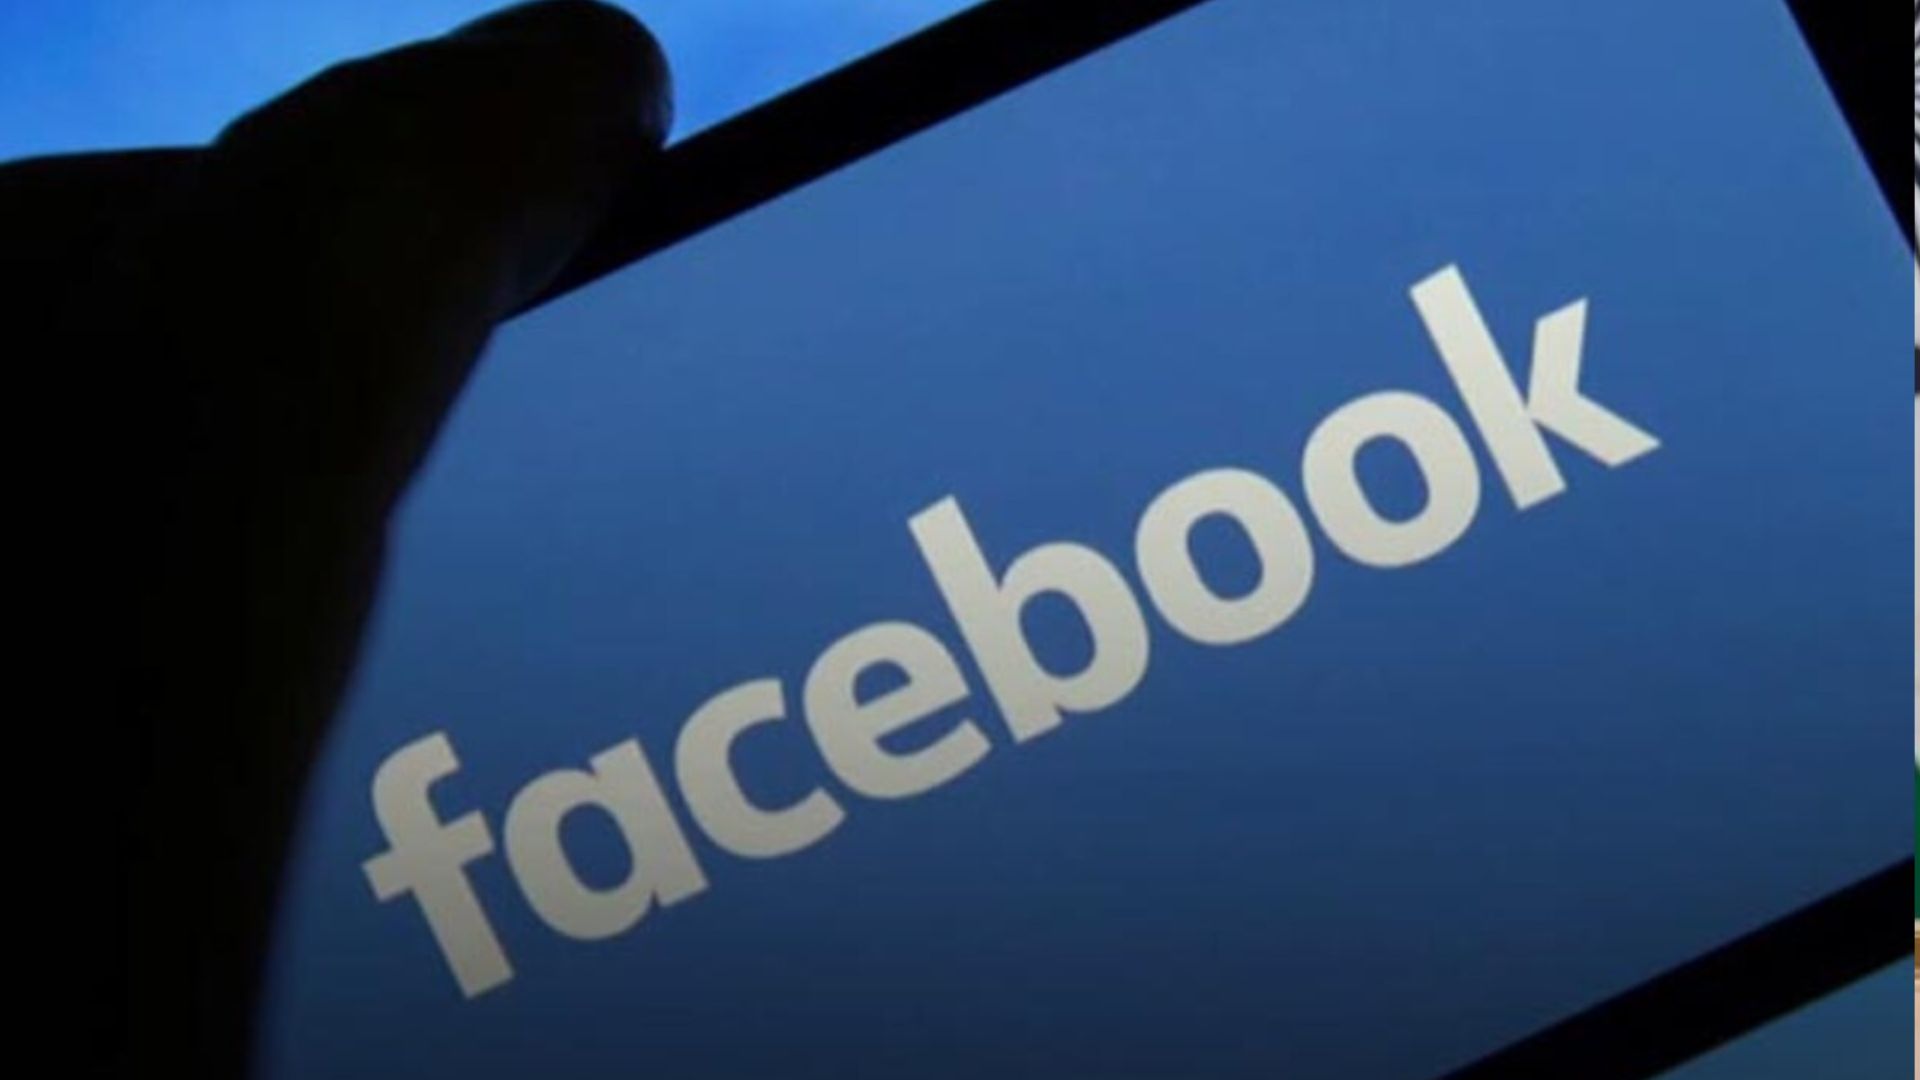 चार फरवरी का इतिहास : फेसबुक लांच, जुकरबर्ग ने बदला सोशल मीडिया का अंदाज, जानें आज की प्रमुख घटनाएं 